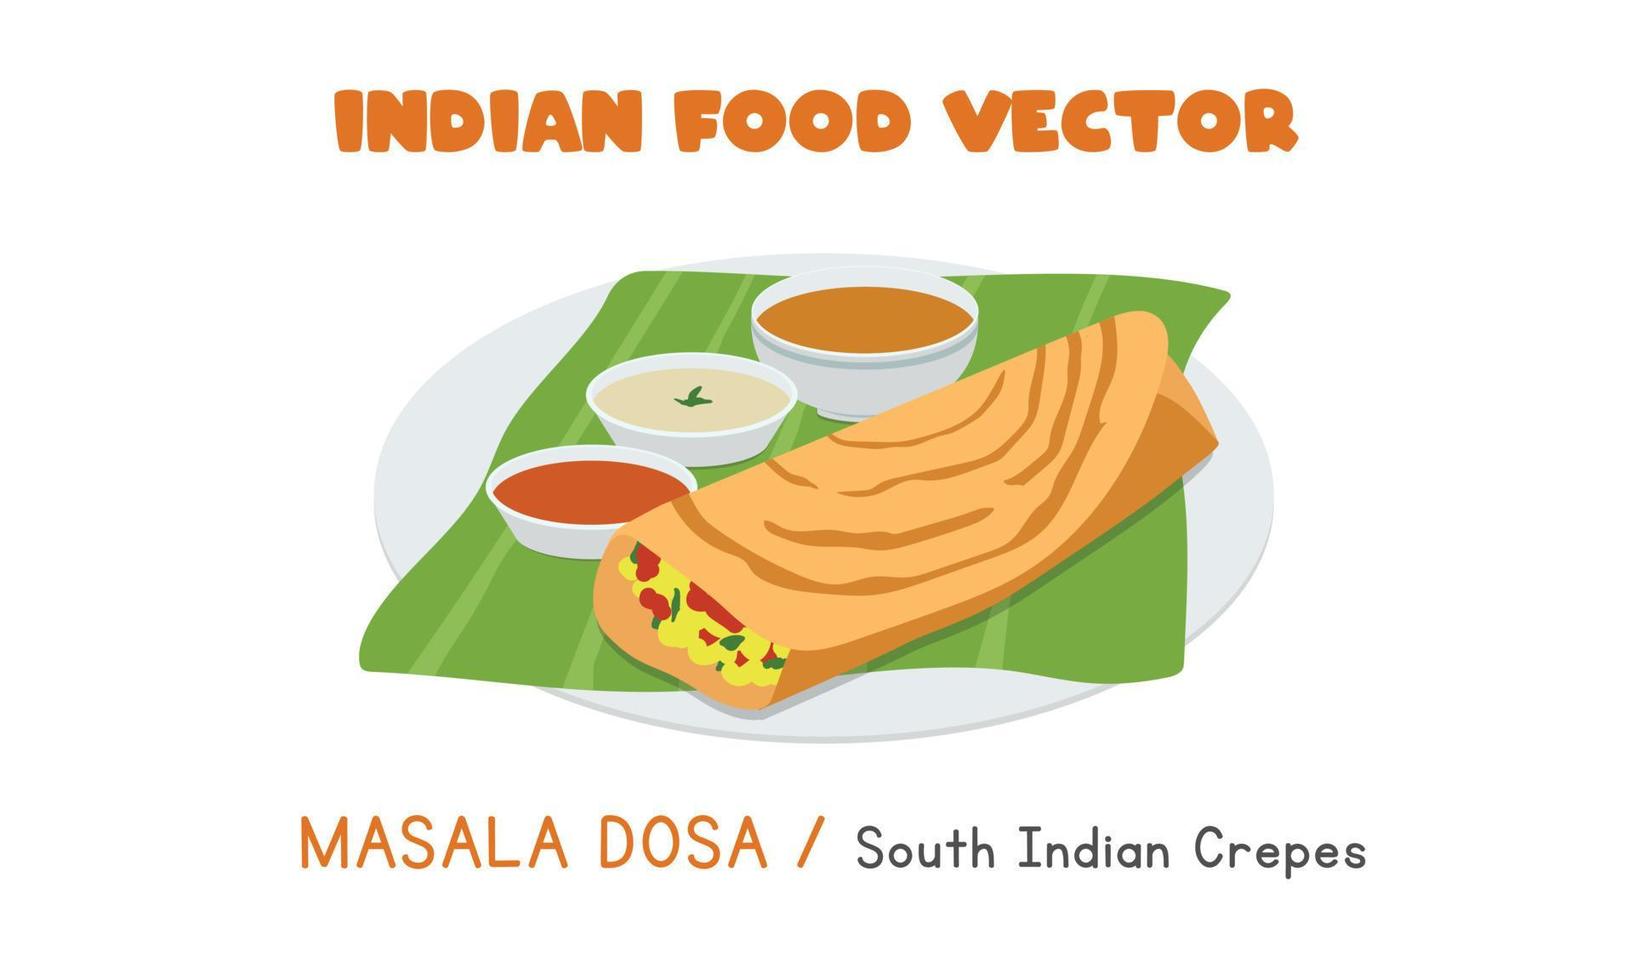 indiano masala dosa - crepes do sul da Índia ilustração em vetor plana isolada no fundo branco. masala dosa clipart estilo cartoon. comida asiática. Cozinha indiana. comida indiana